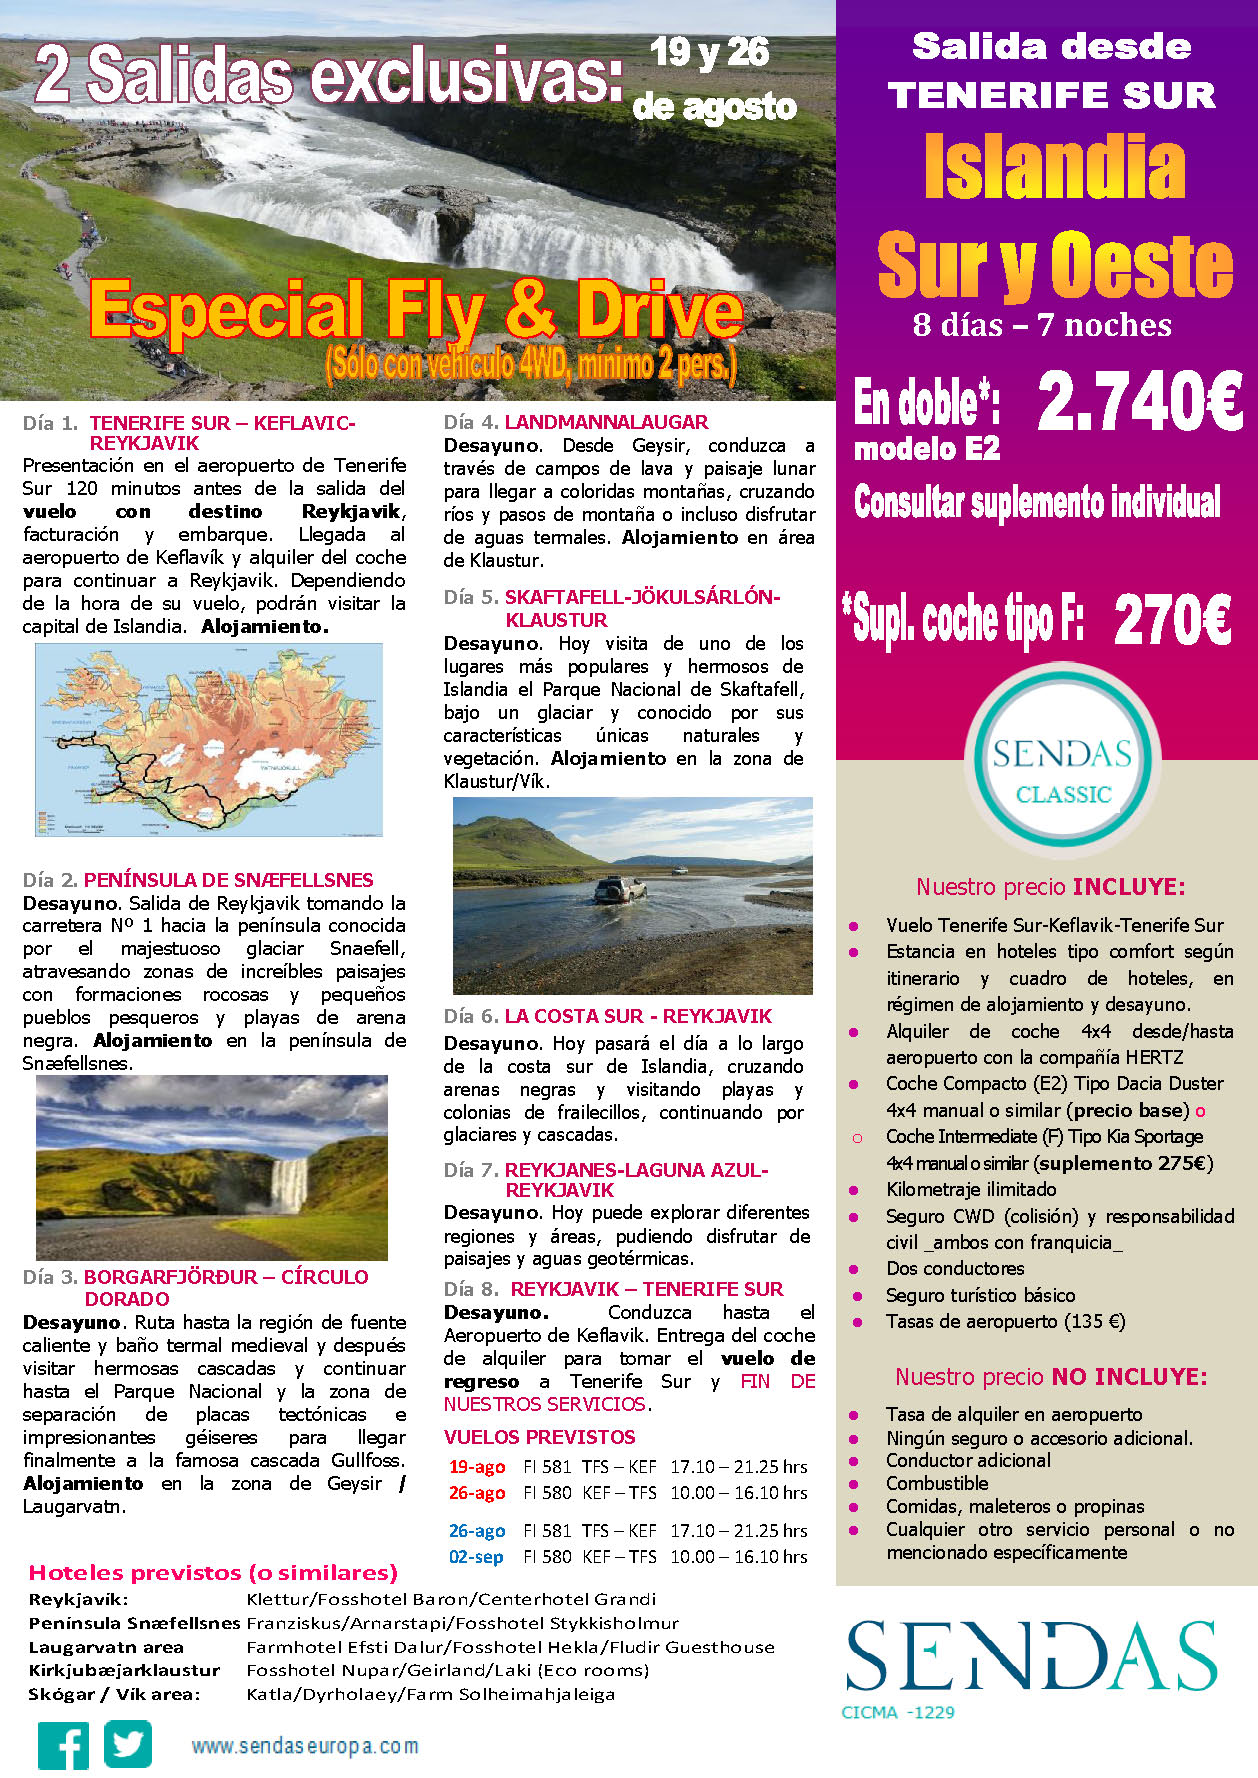 Oferta Sendas Agosto 2023 Circuito Islandia Sur y Oeste Fly and Drive 8 dias salida en vuelo directo desde Tenerife Sur